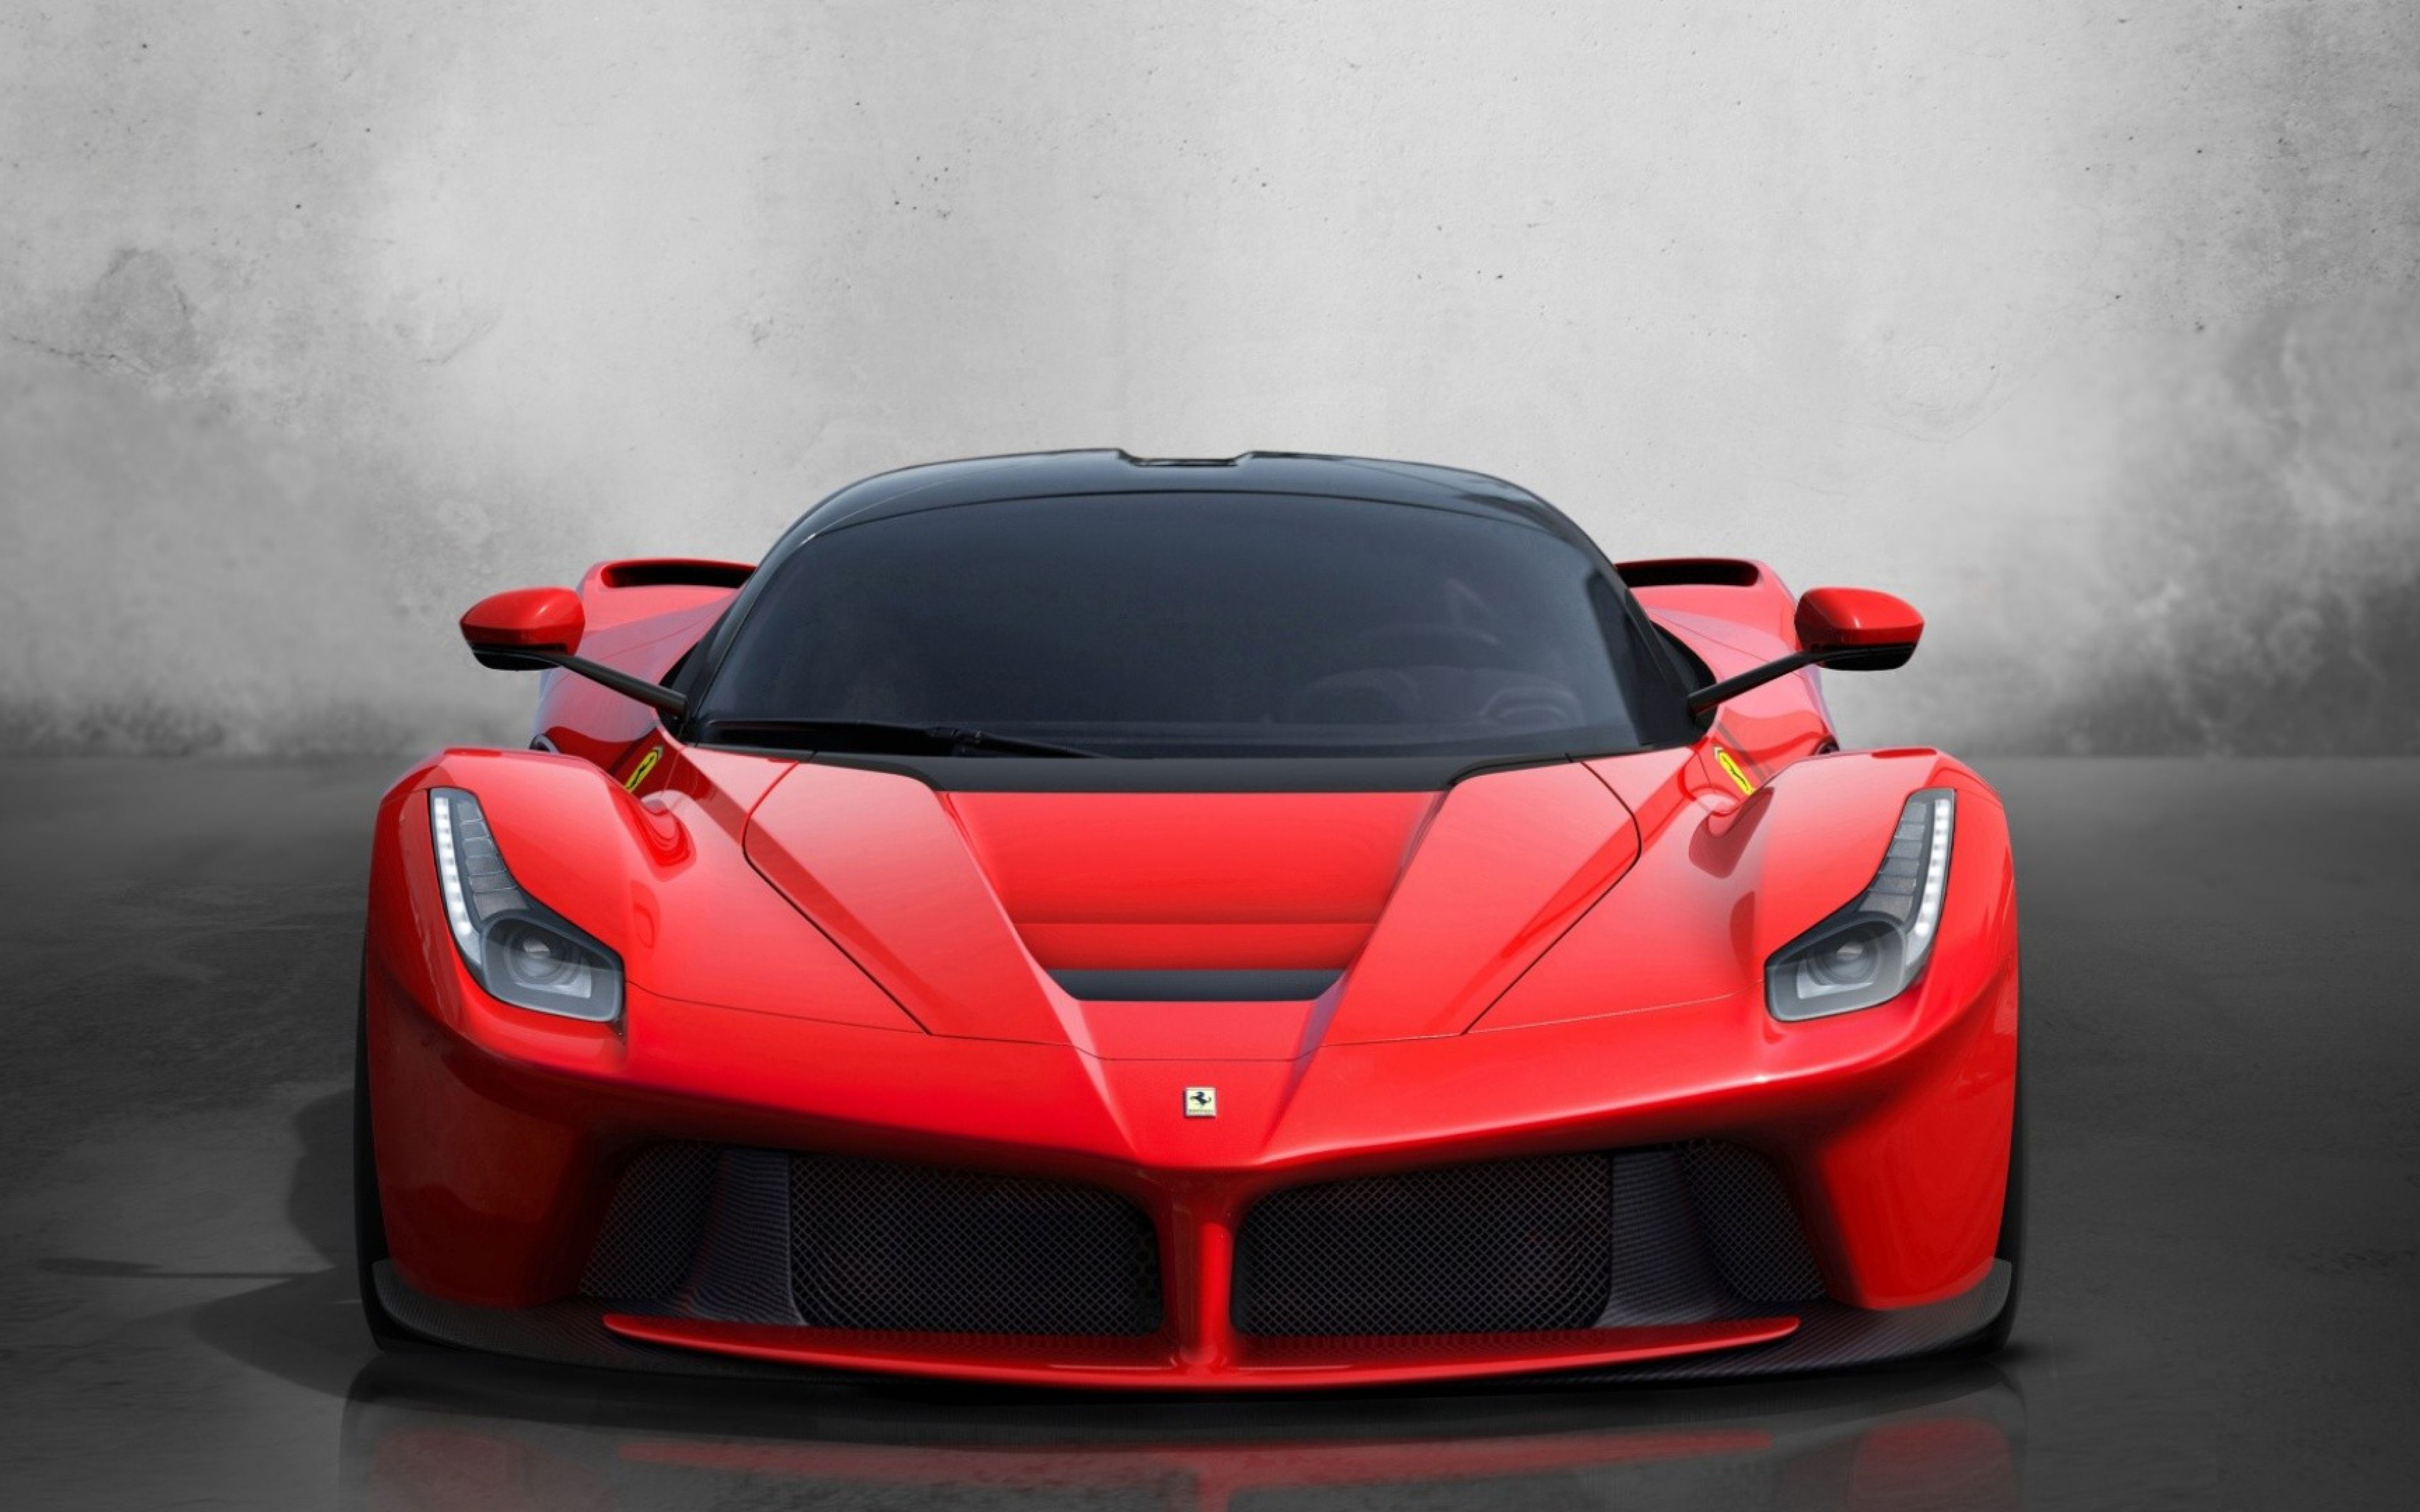 Ferrari là một thương hiệu xe hơi có mác đã trở thành biểu tượng của tốc độ và đẳng cấp. Hãy xem hình ảnh liên quan đến thương hiệu xe hơi này để tìm hiểu về những mẫu xe đỉnh cao của công nghệ thế giới, mang lại cảm giác thăng hoa và đam mê cho những tín đồ của xe hơi.